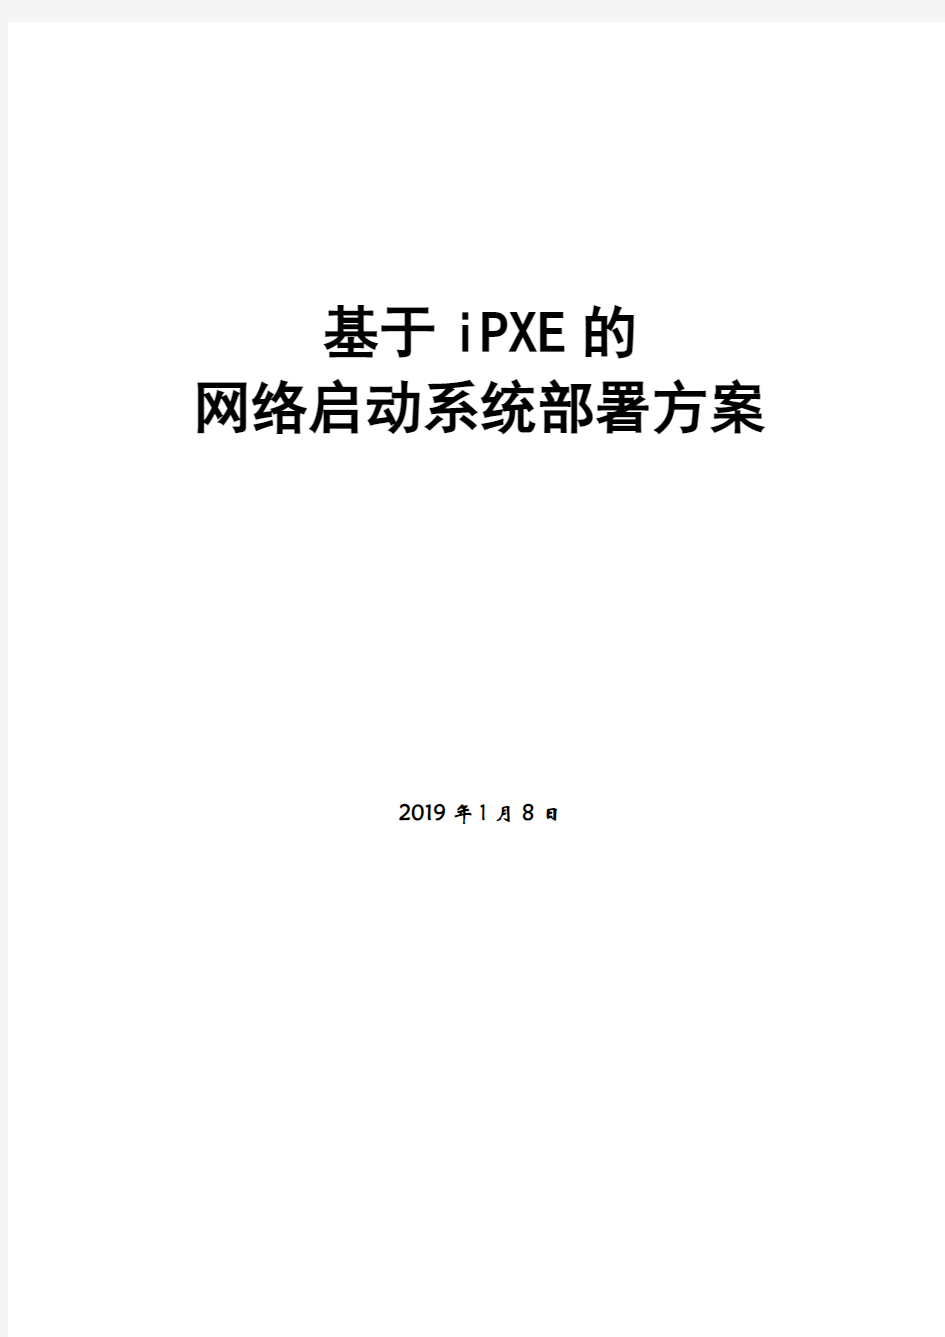 最新基于IPXE的网络部署文档-精选版整理版